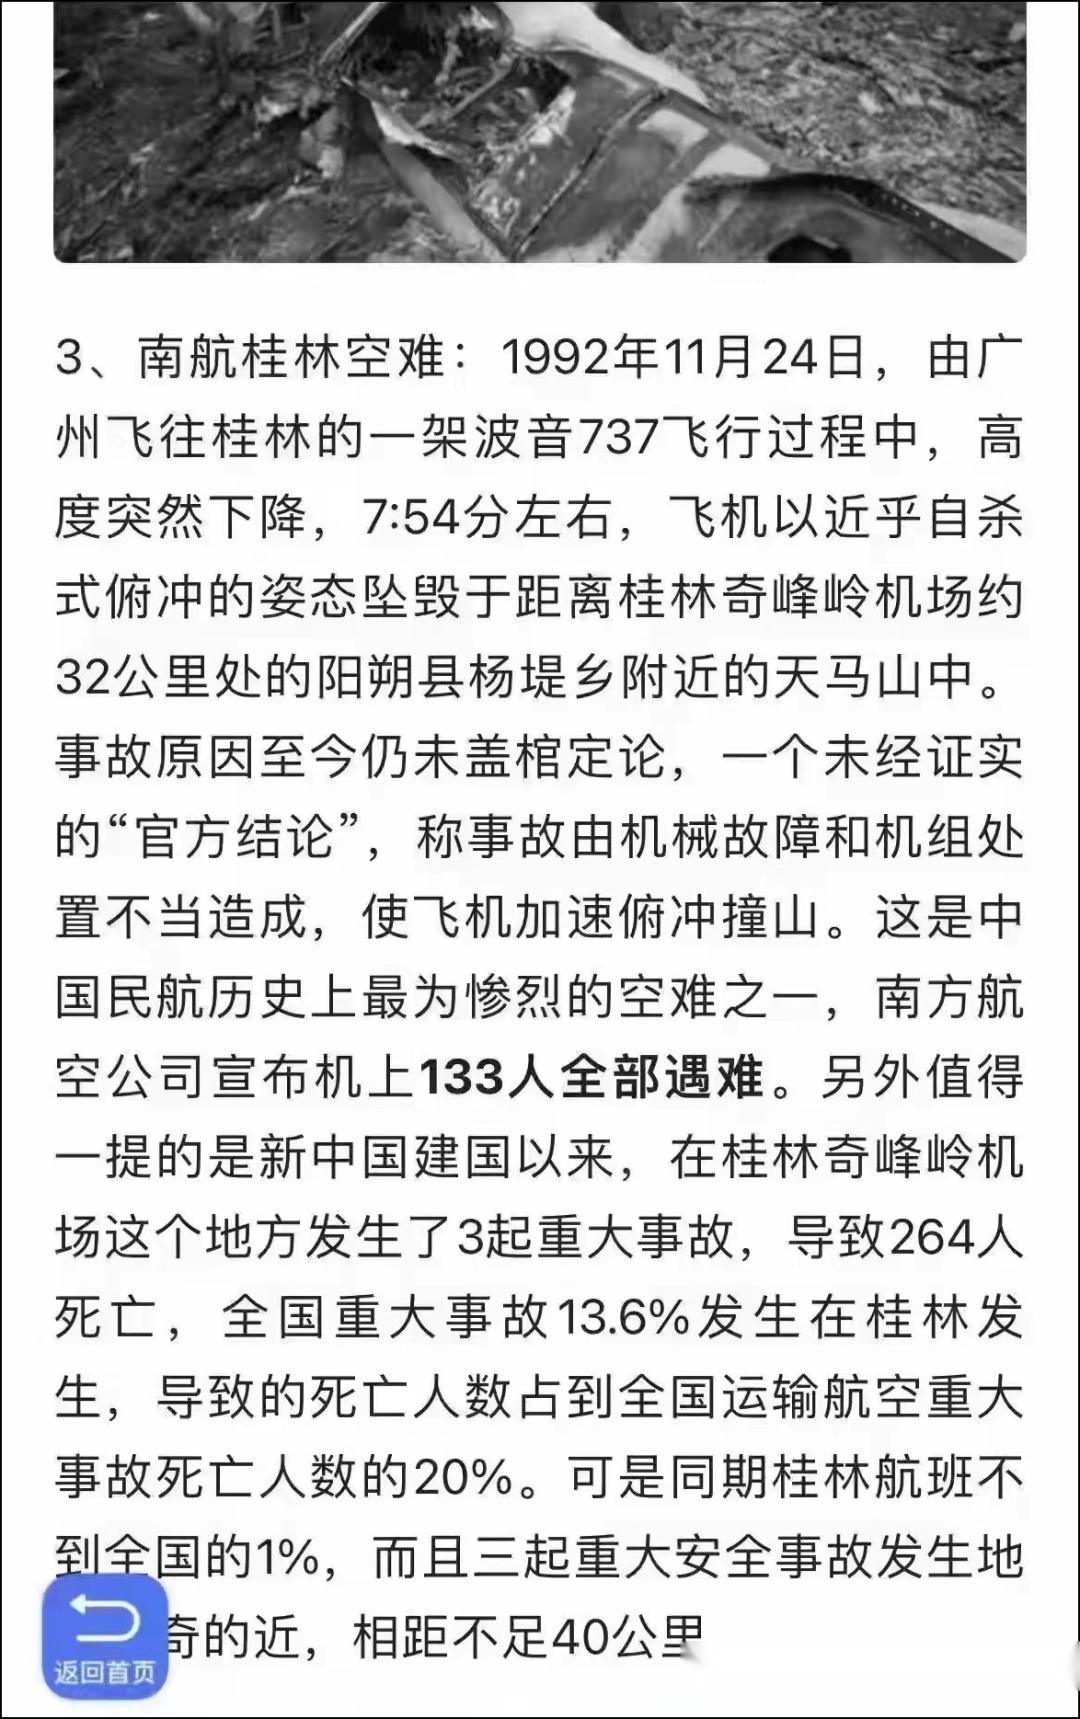 同样是波音737;同样是在广西;一个是133人遇难,一个是132人遇难